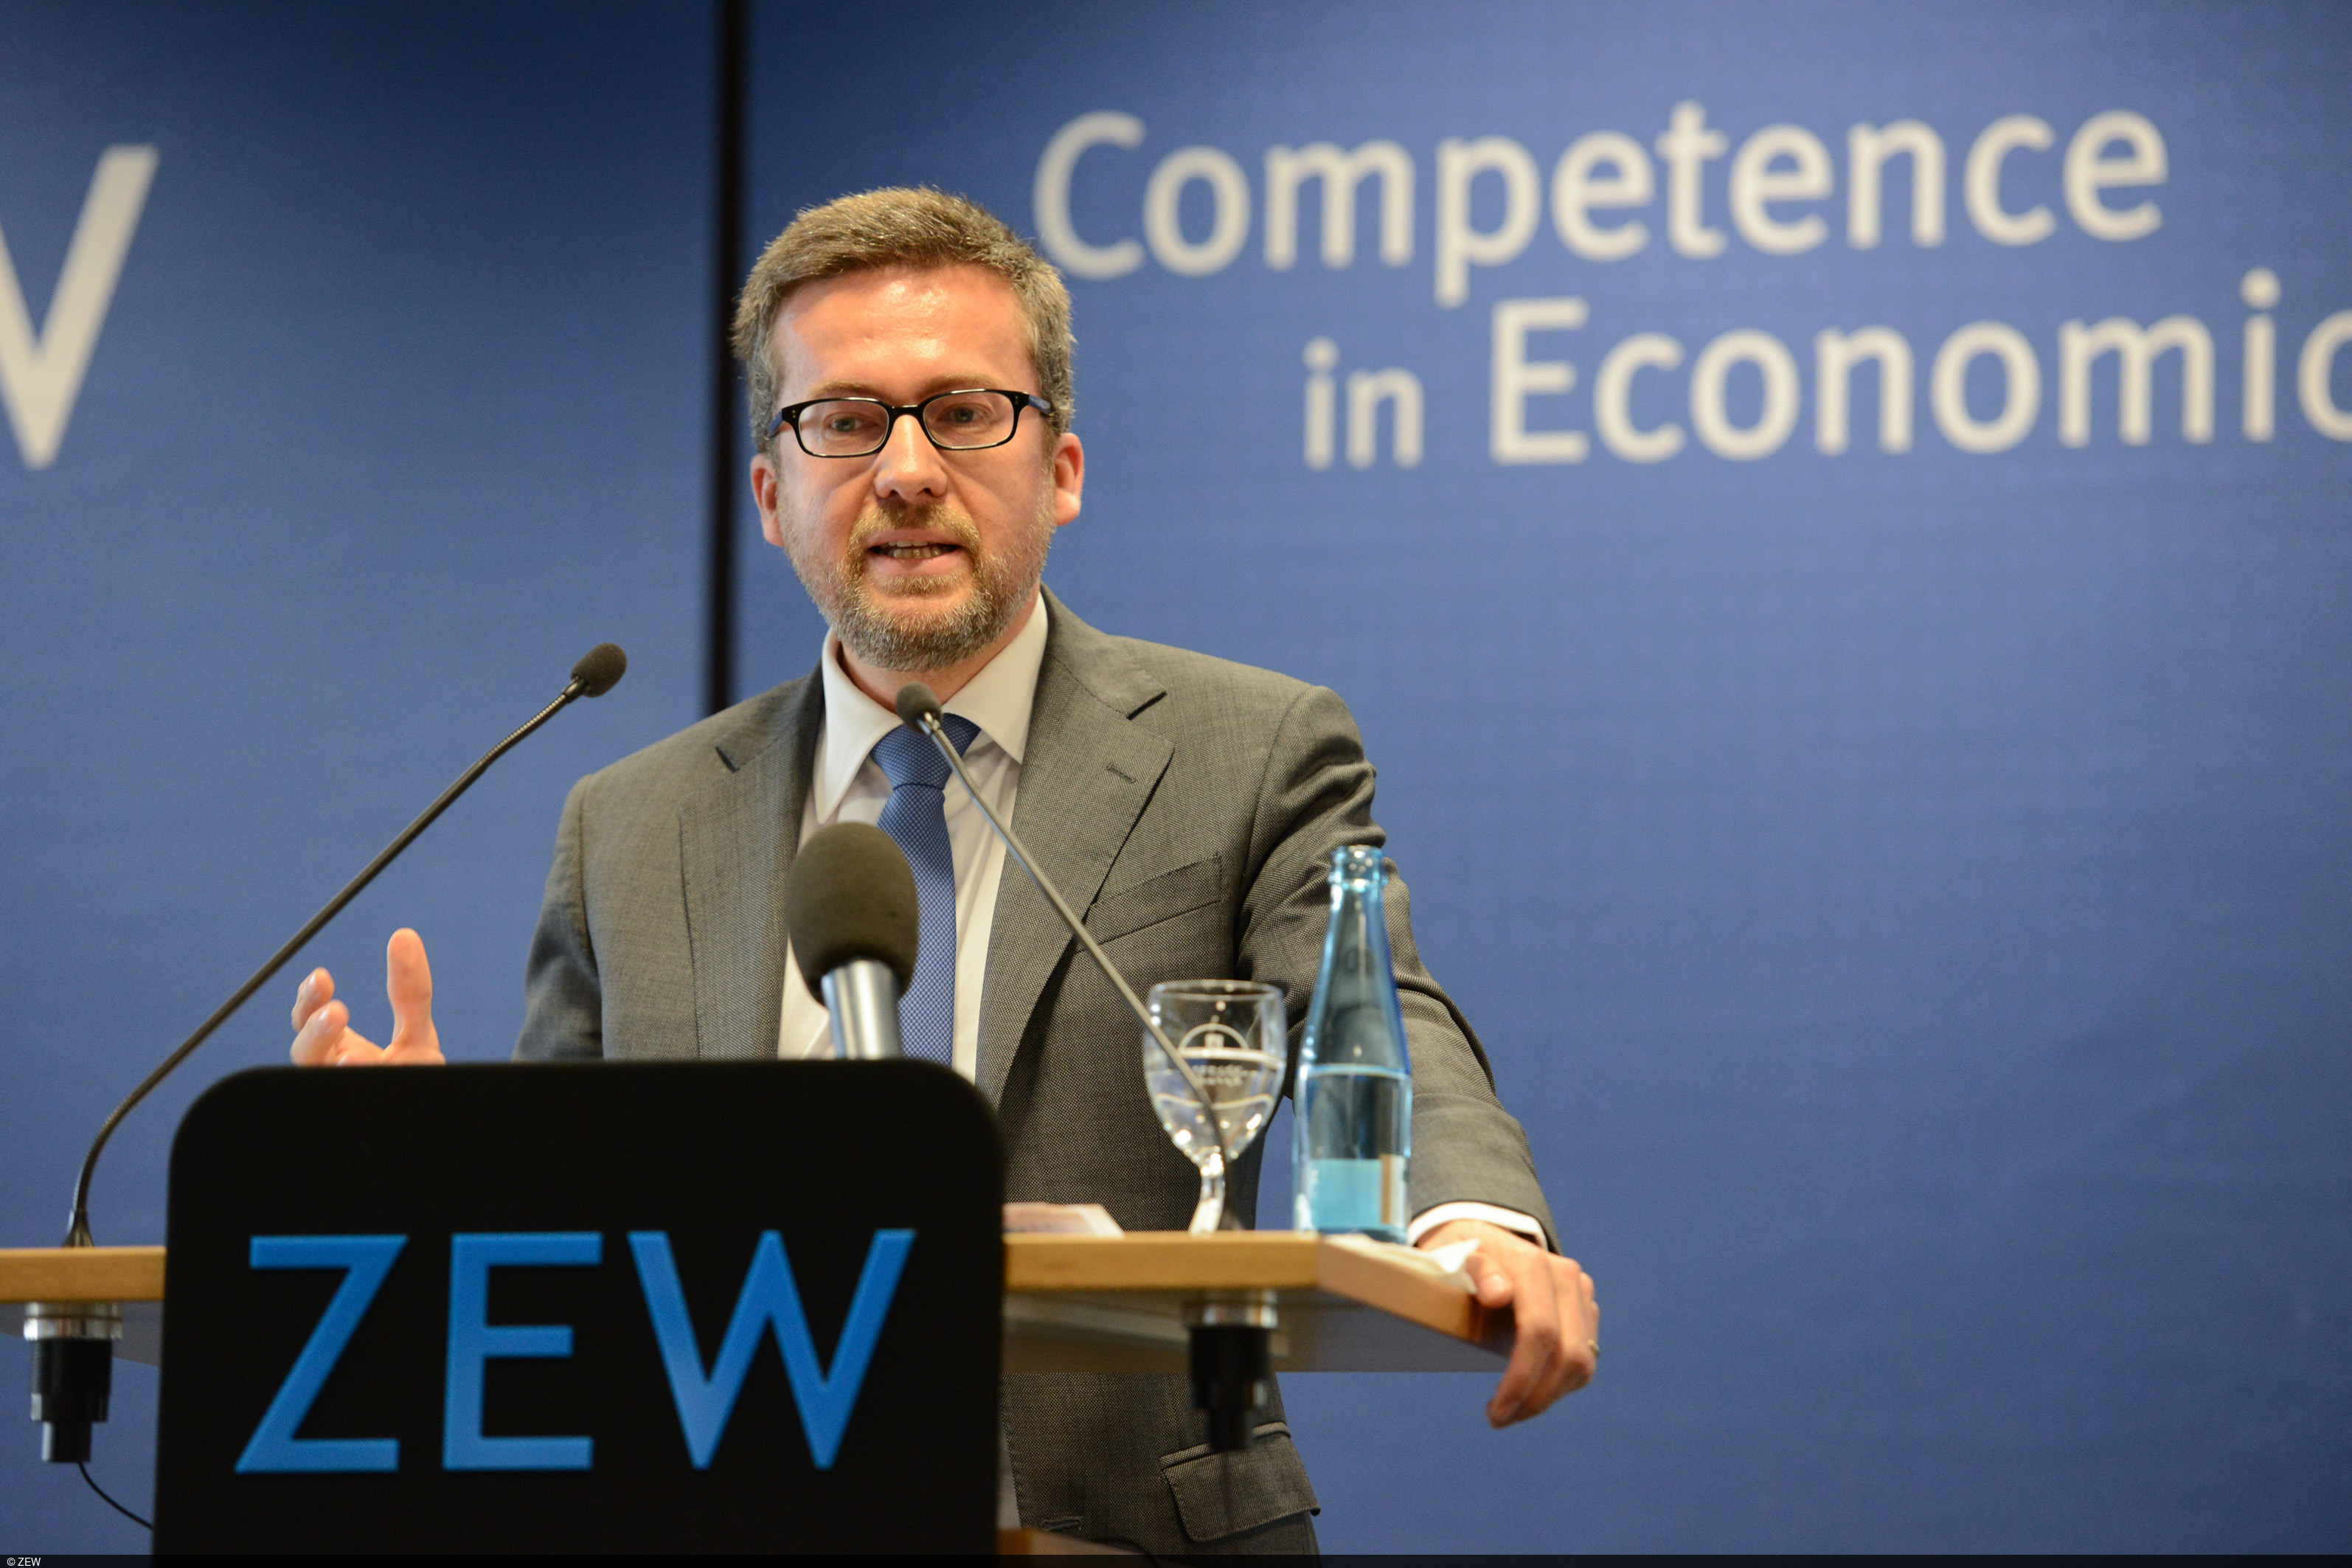 In seinem ZEW-Vortrag macht Carlos Moedas Vorschläge für eine innovativere Wirtschaft in der EU.